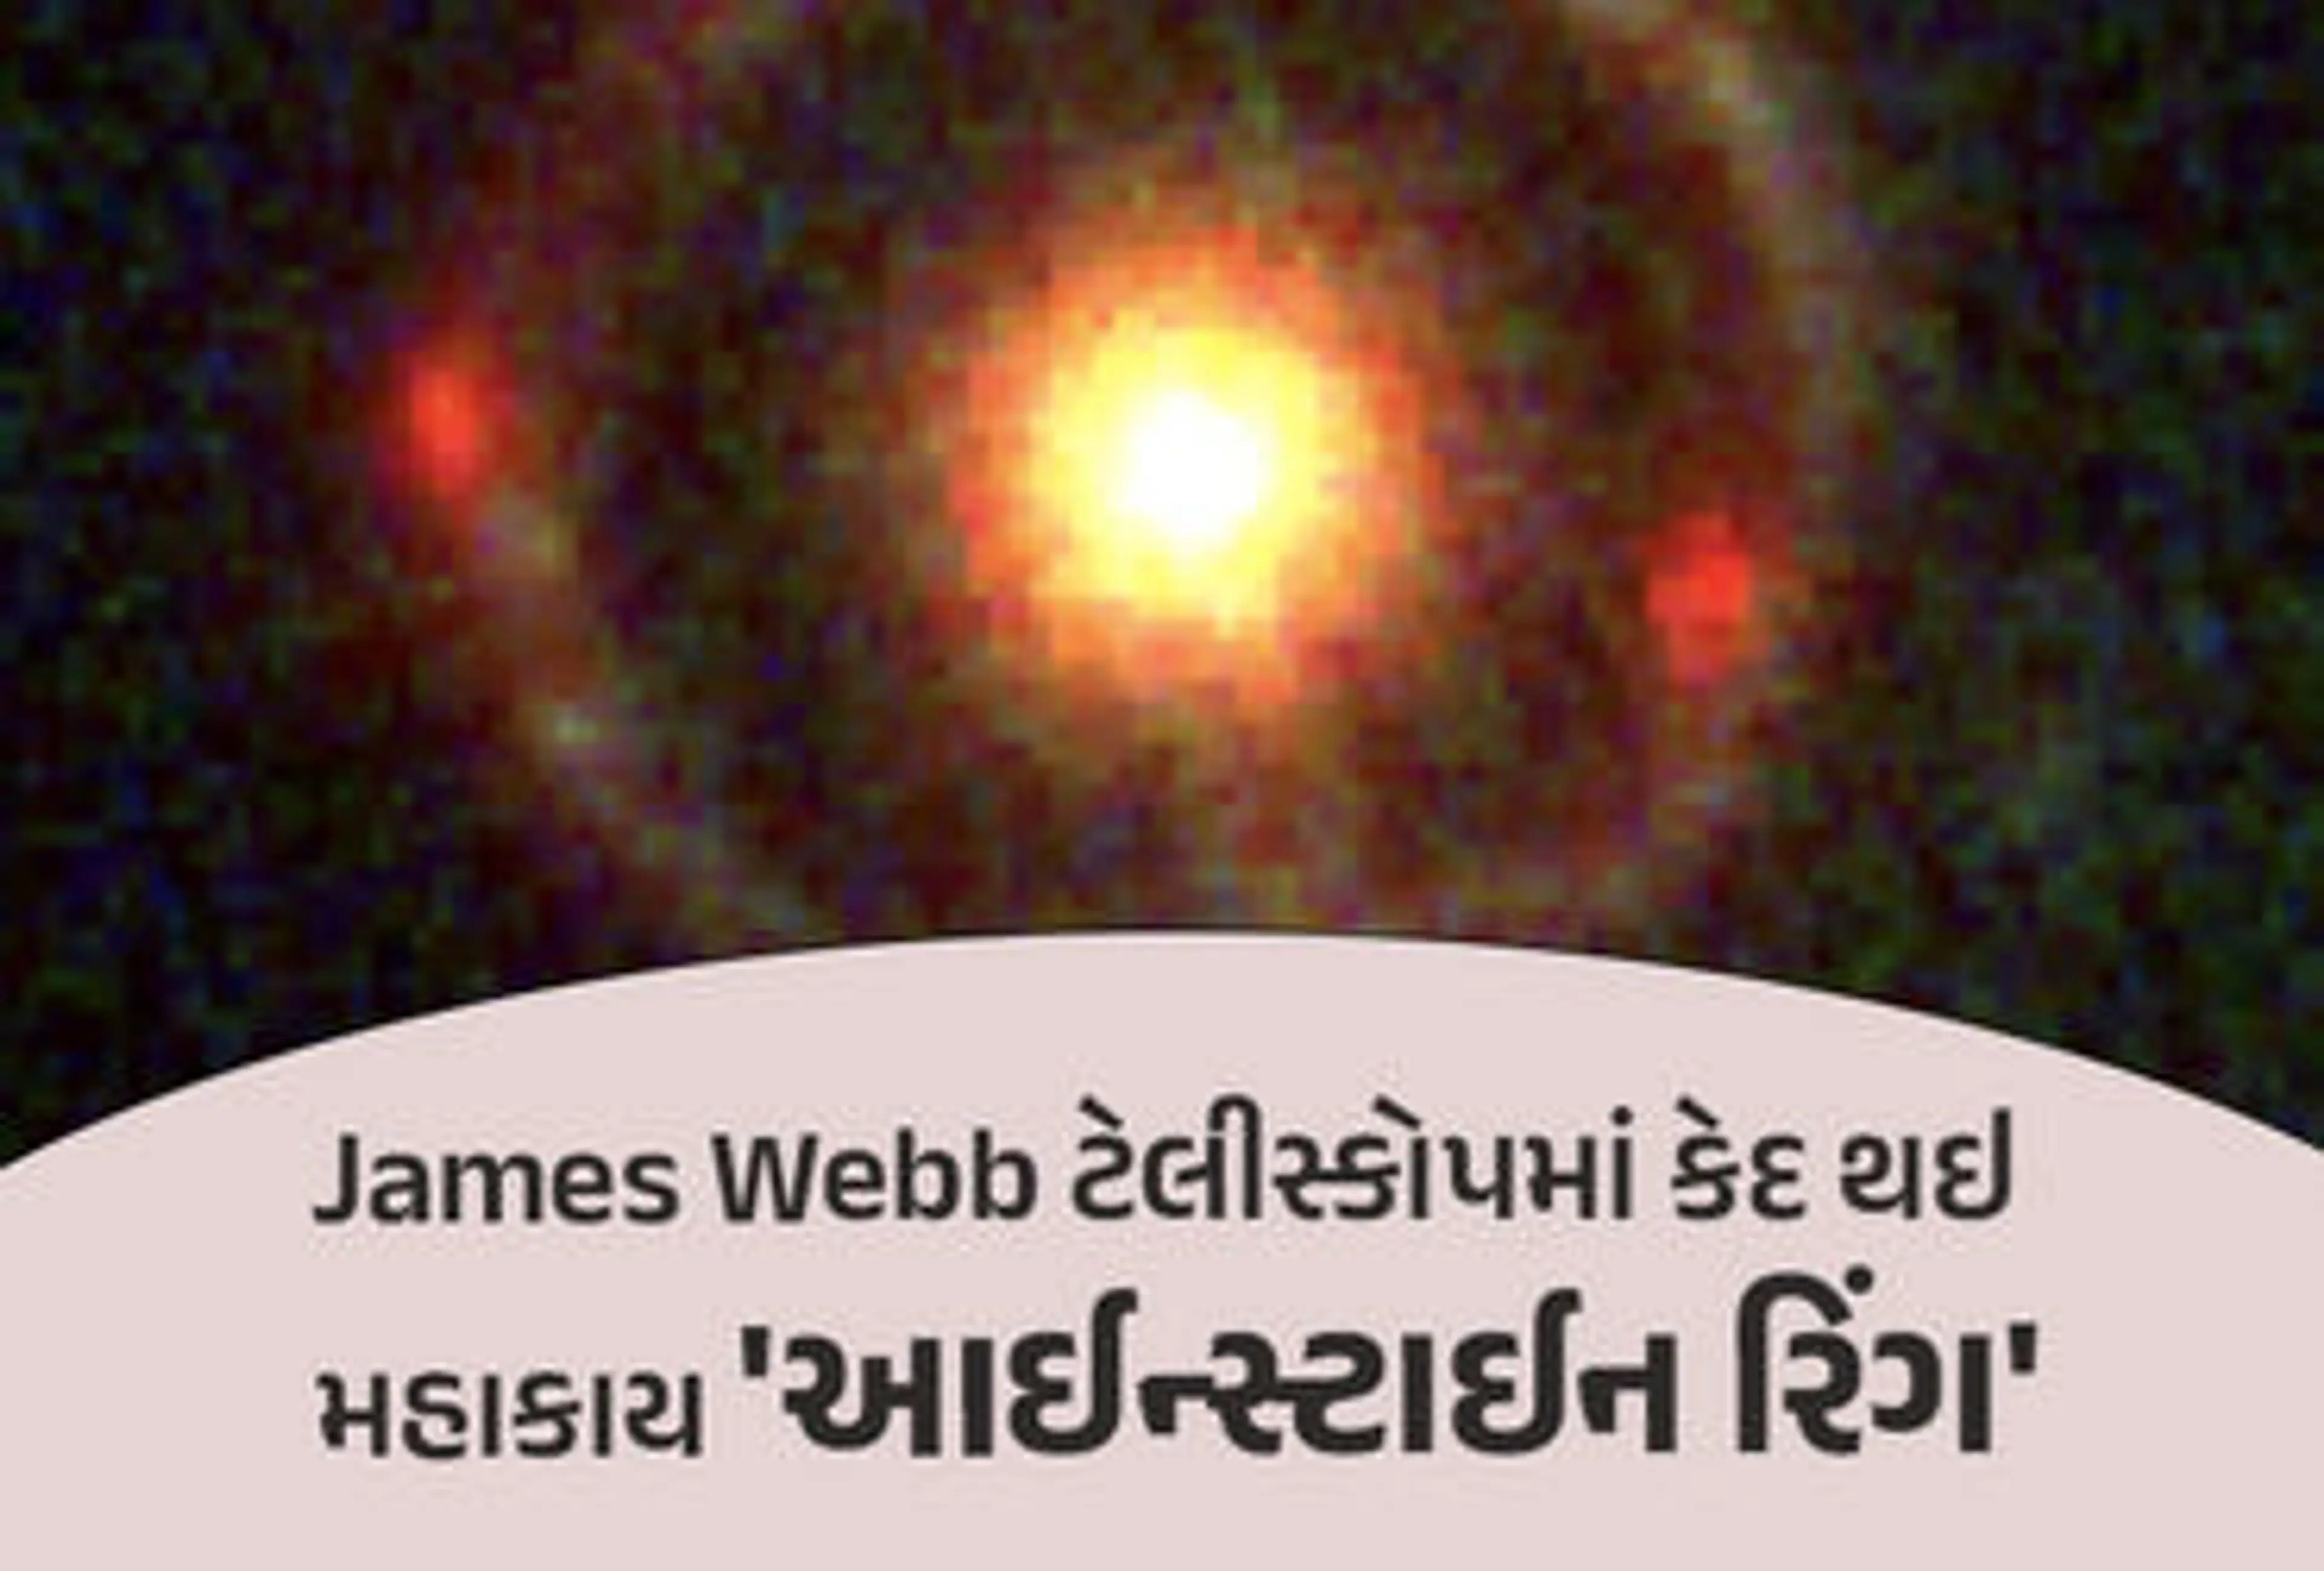 James Webbનો કમાલ! અવકાશમાં દેખાઈ 'આઈન્સ્ટાઈન રિંગ', જેમાં 6500 કરોડ સૂર્ય સમાઈ શકે